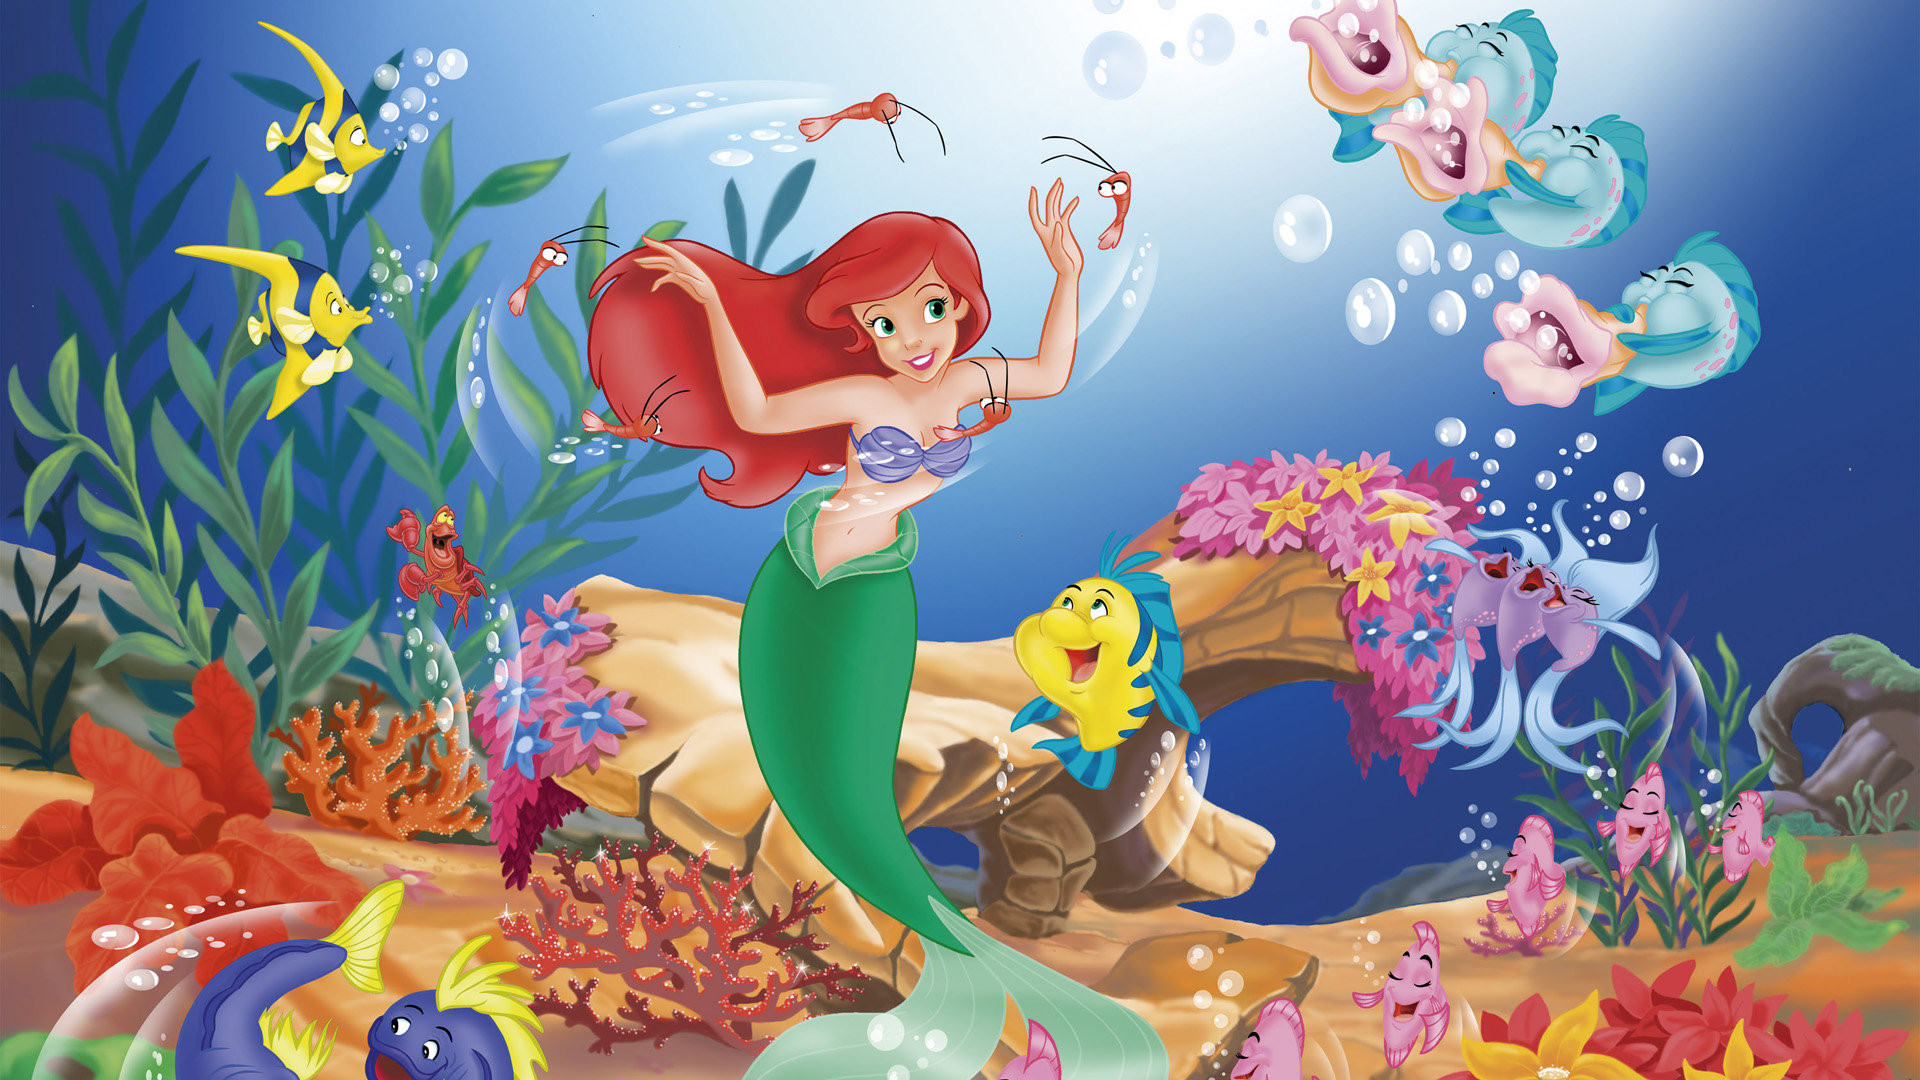 Disney's Ariel the Little Mermaid